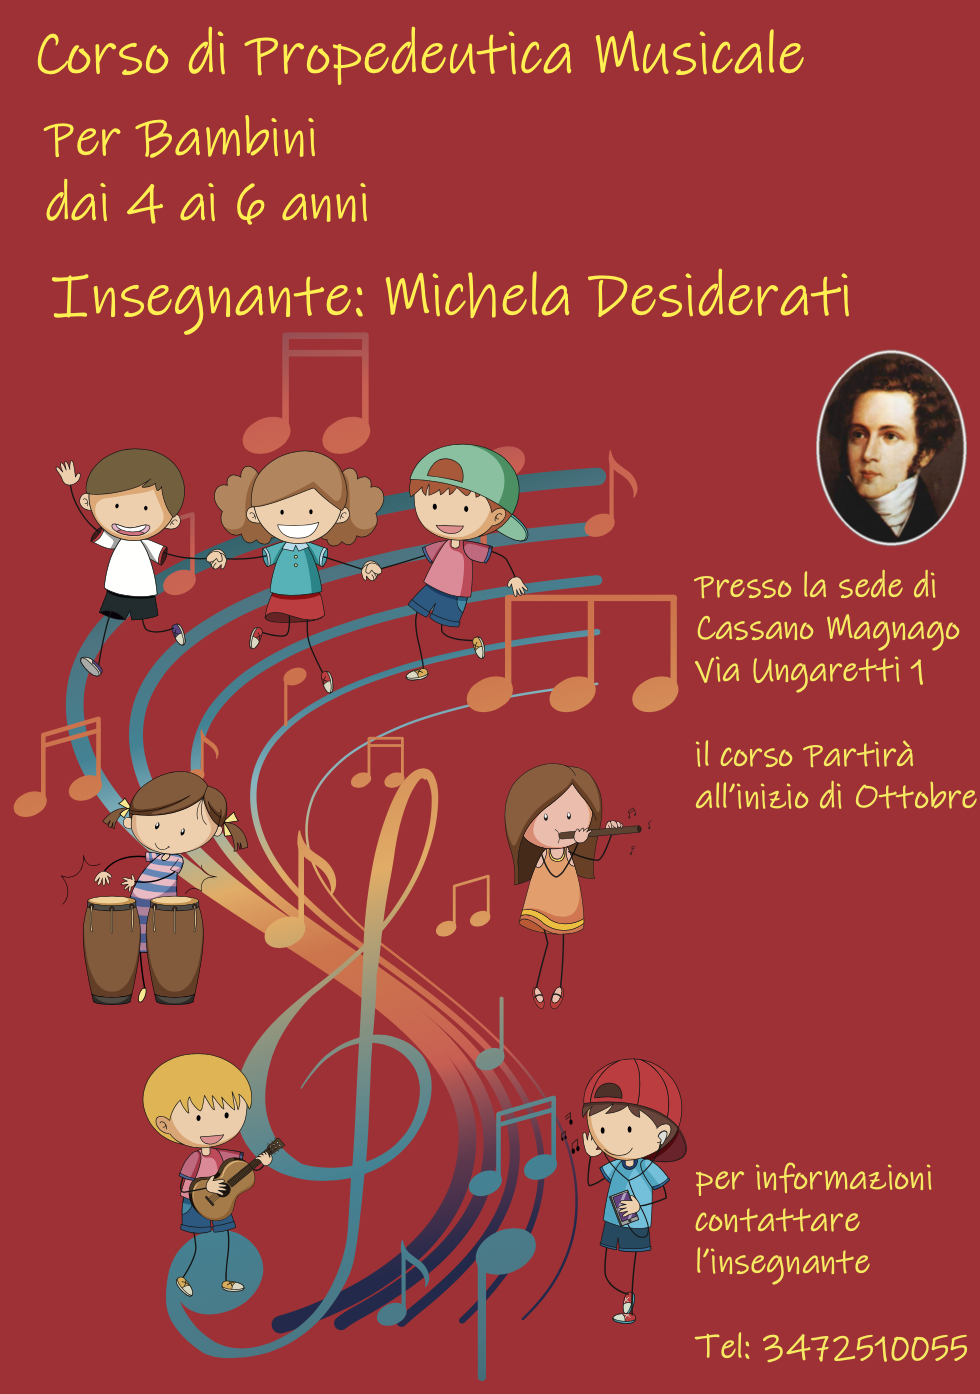 Corso di propedeutica Musicale per bambini dai 4 ai 6 anni – Sede di Cassano